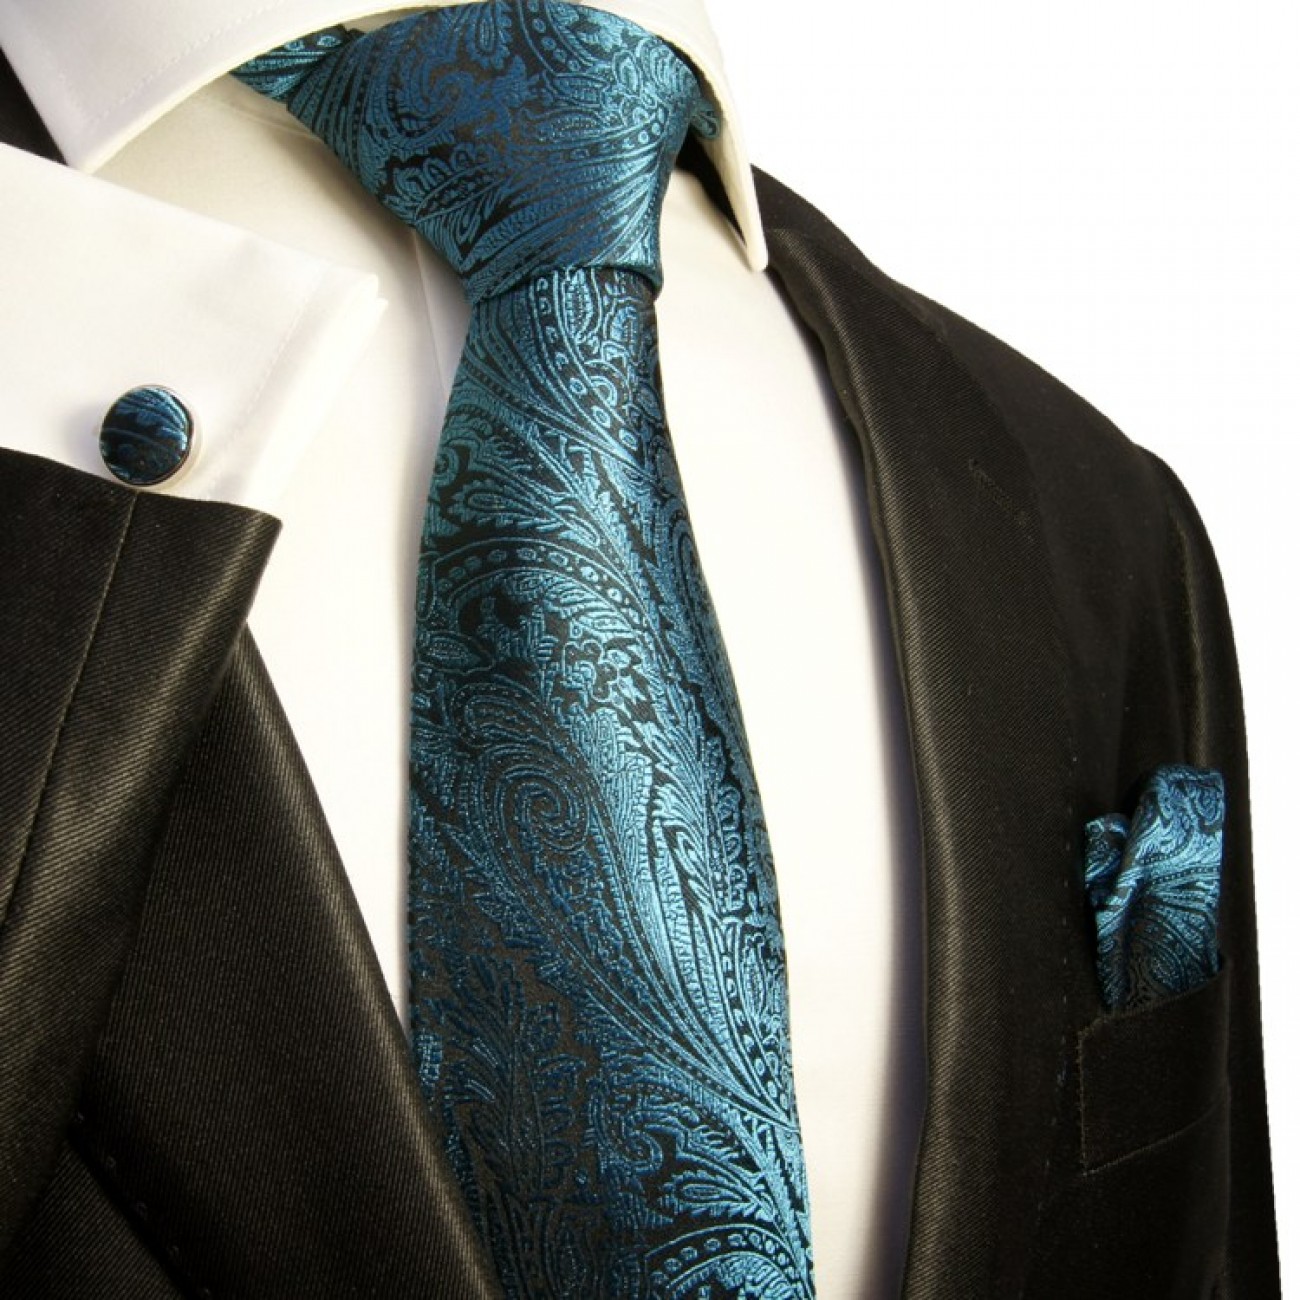 Aqua Krawatten Set 3tlg